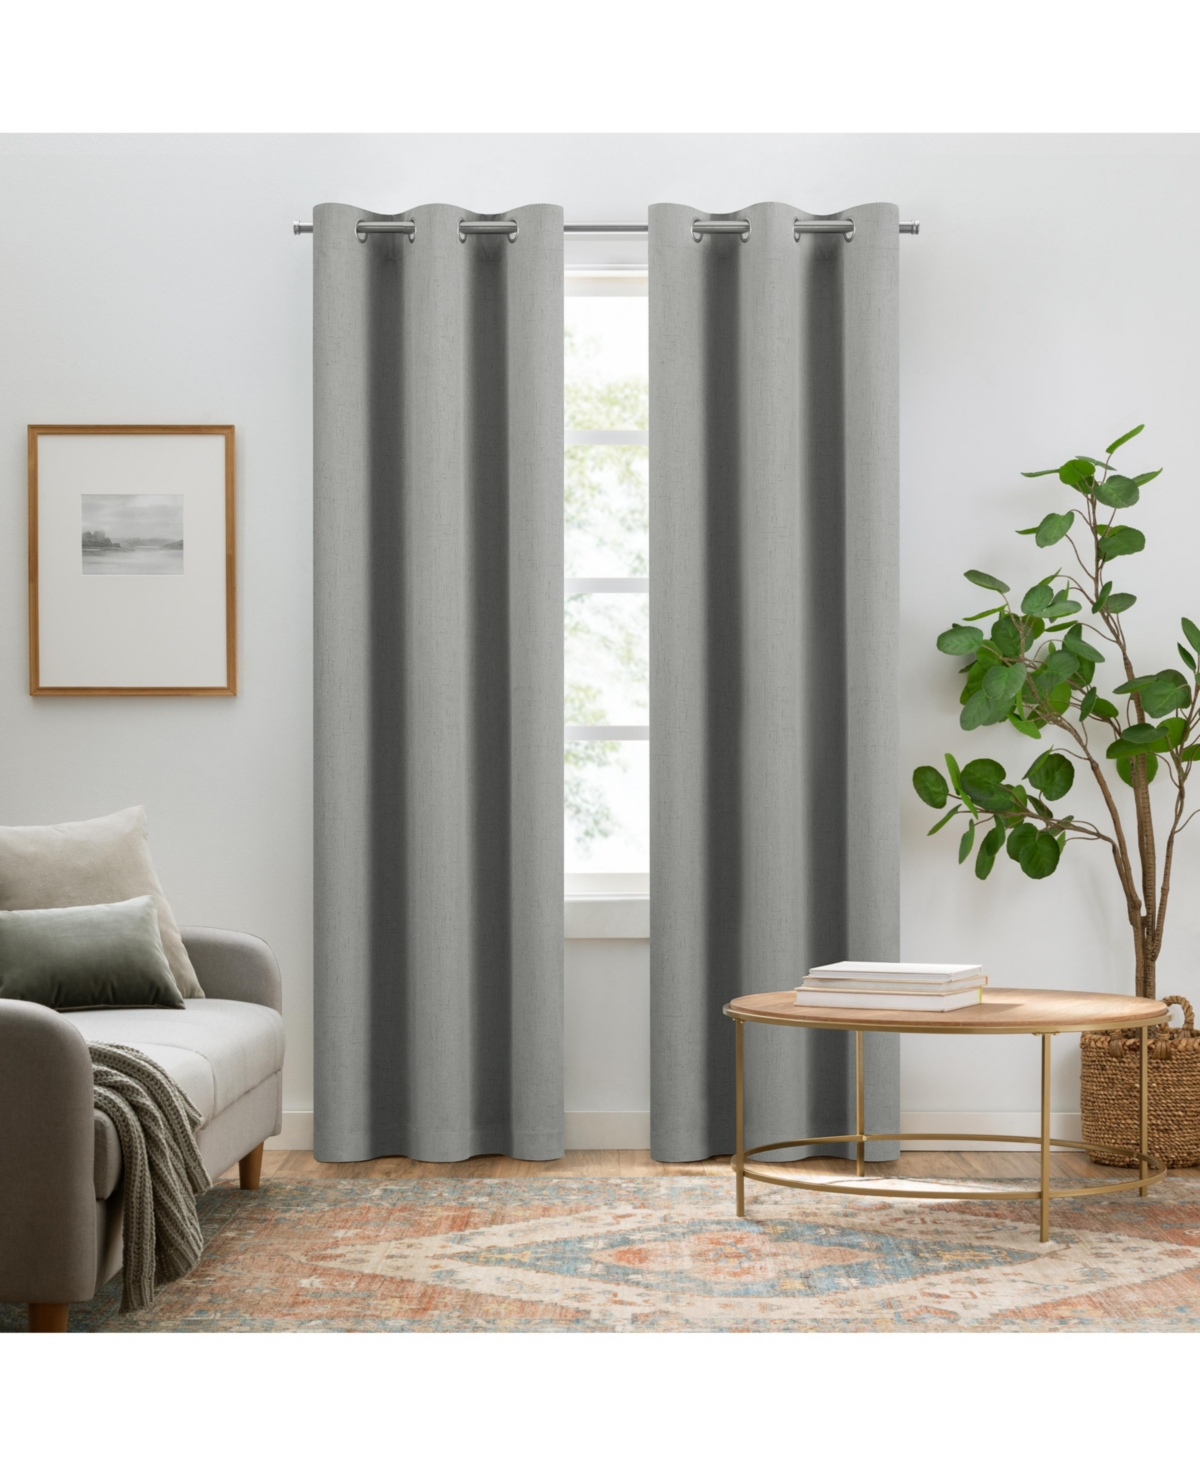 Pembroke 100% Blackout Curtains, Faux Linen Grommet Window Curtains, 108" long x 42" wide (2 Panels), Grey - Grey